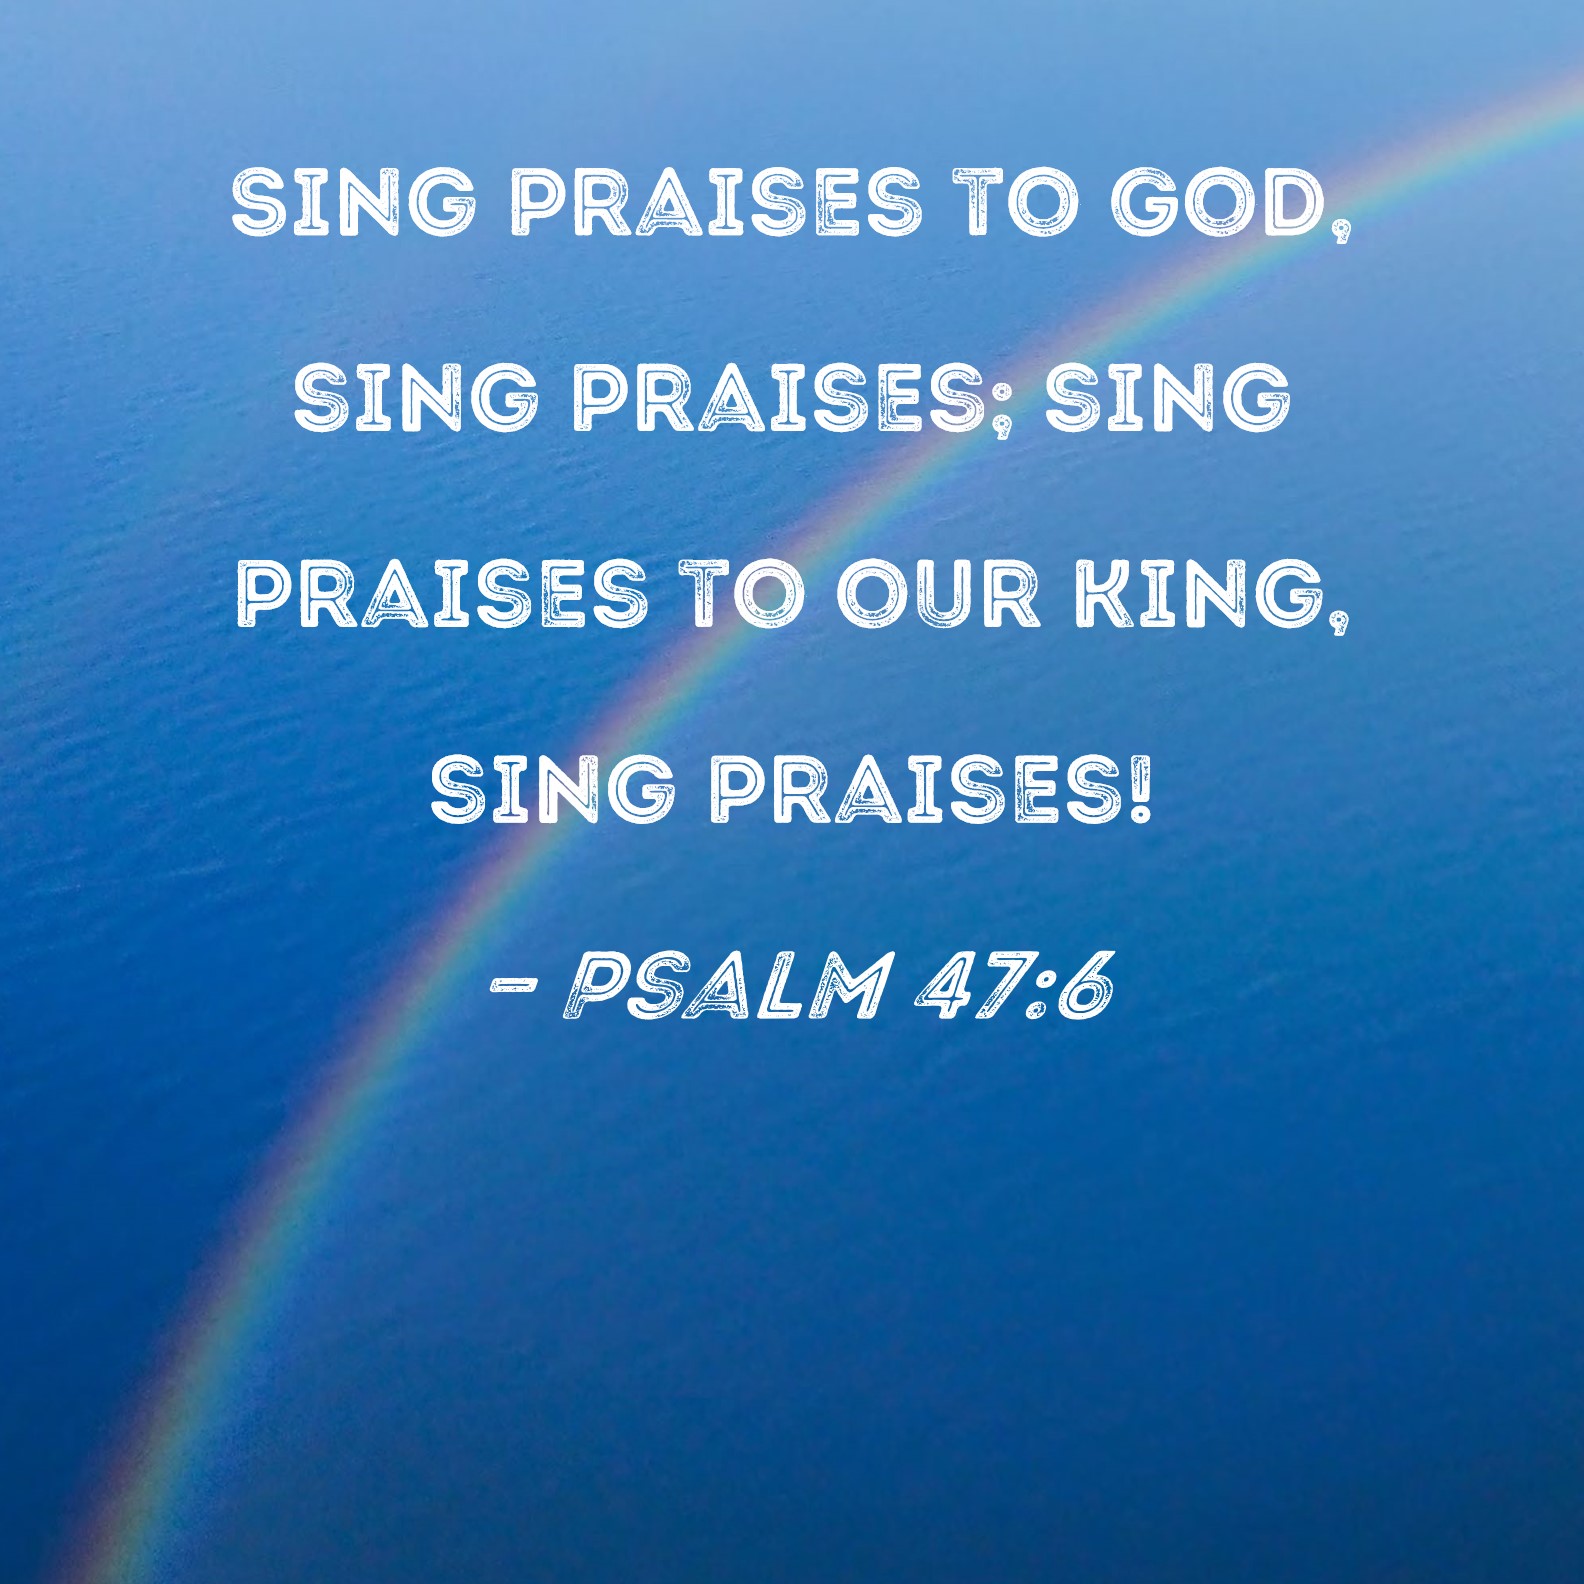 Psalm 47:6 Sing praises to God sing praises sing praises to our King